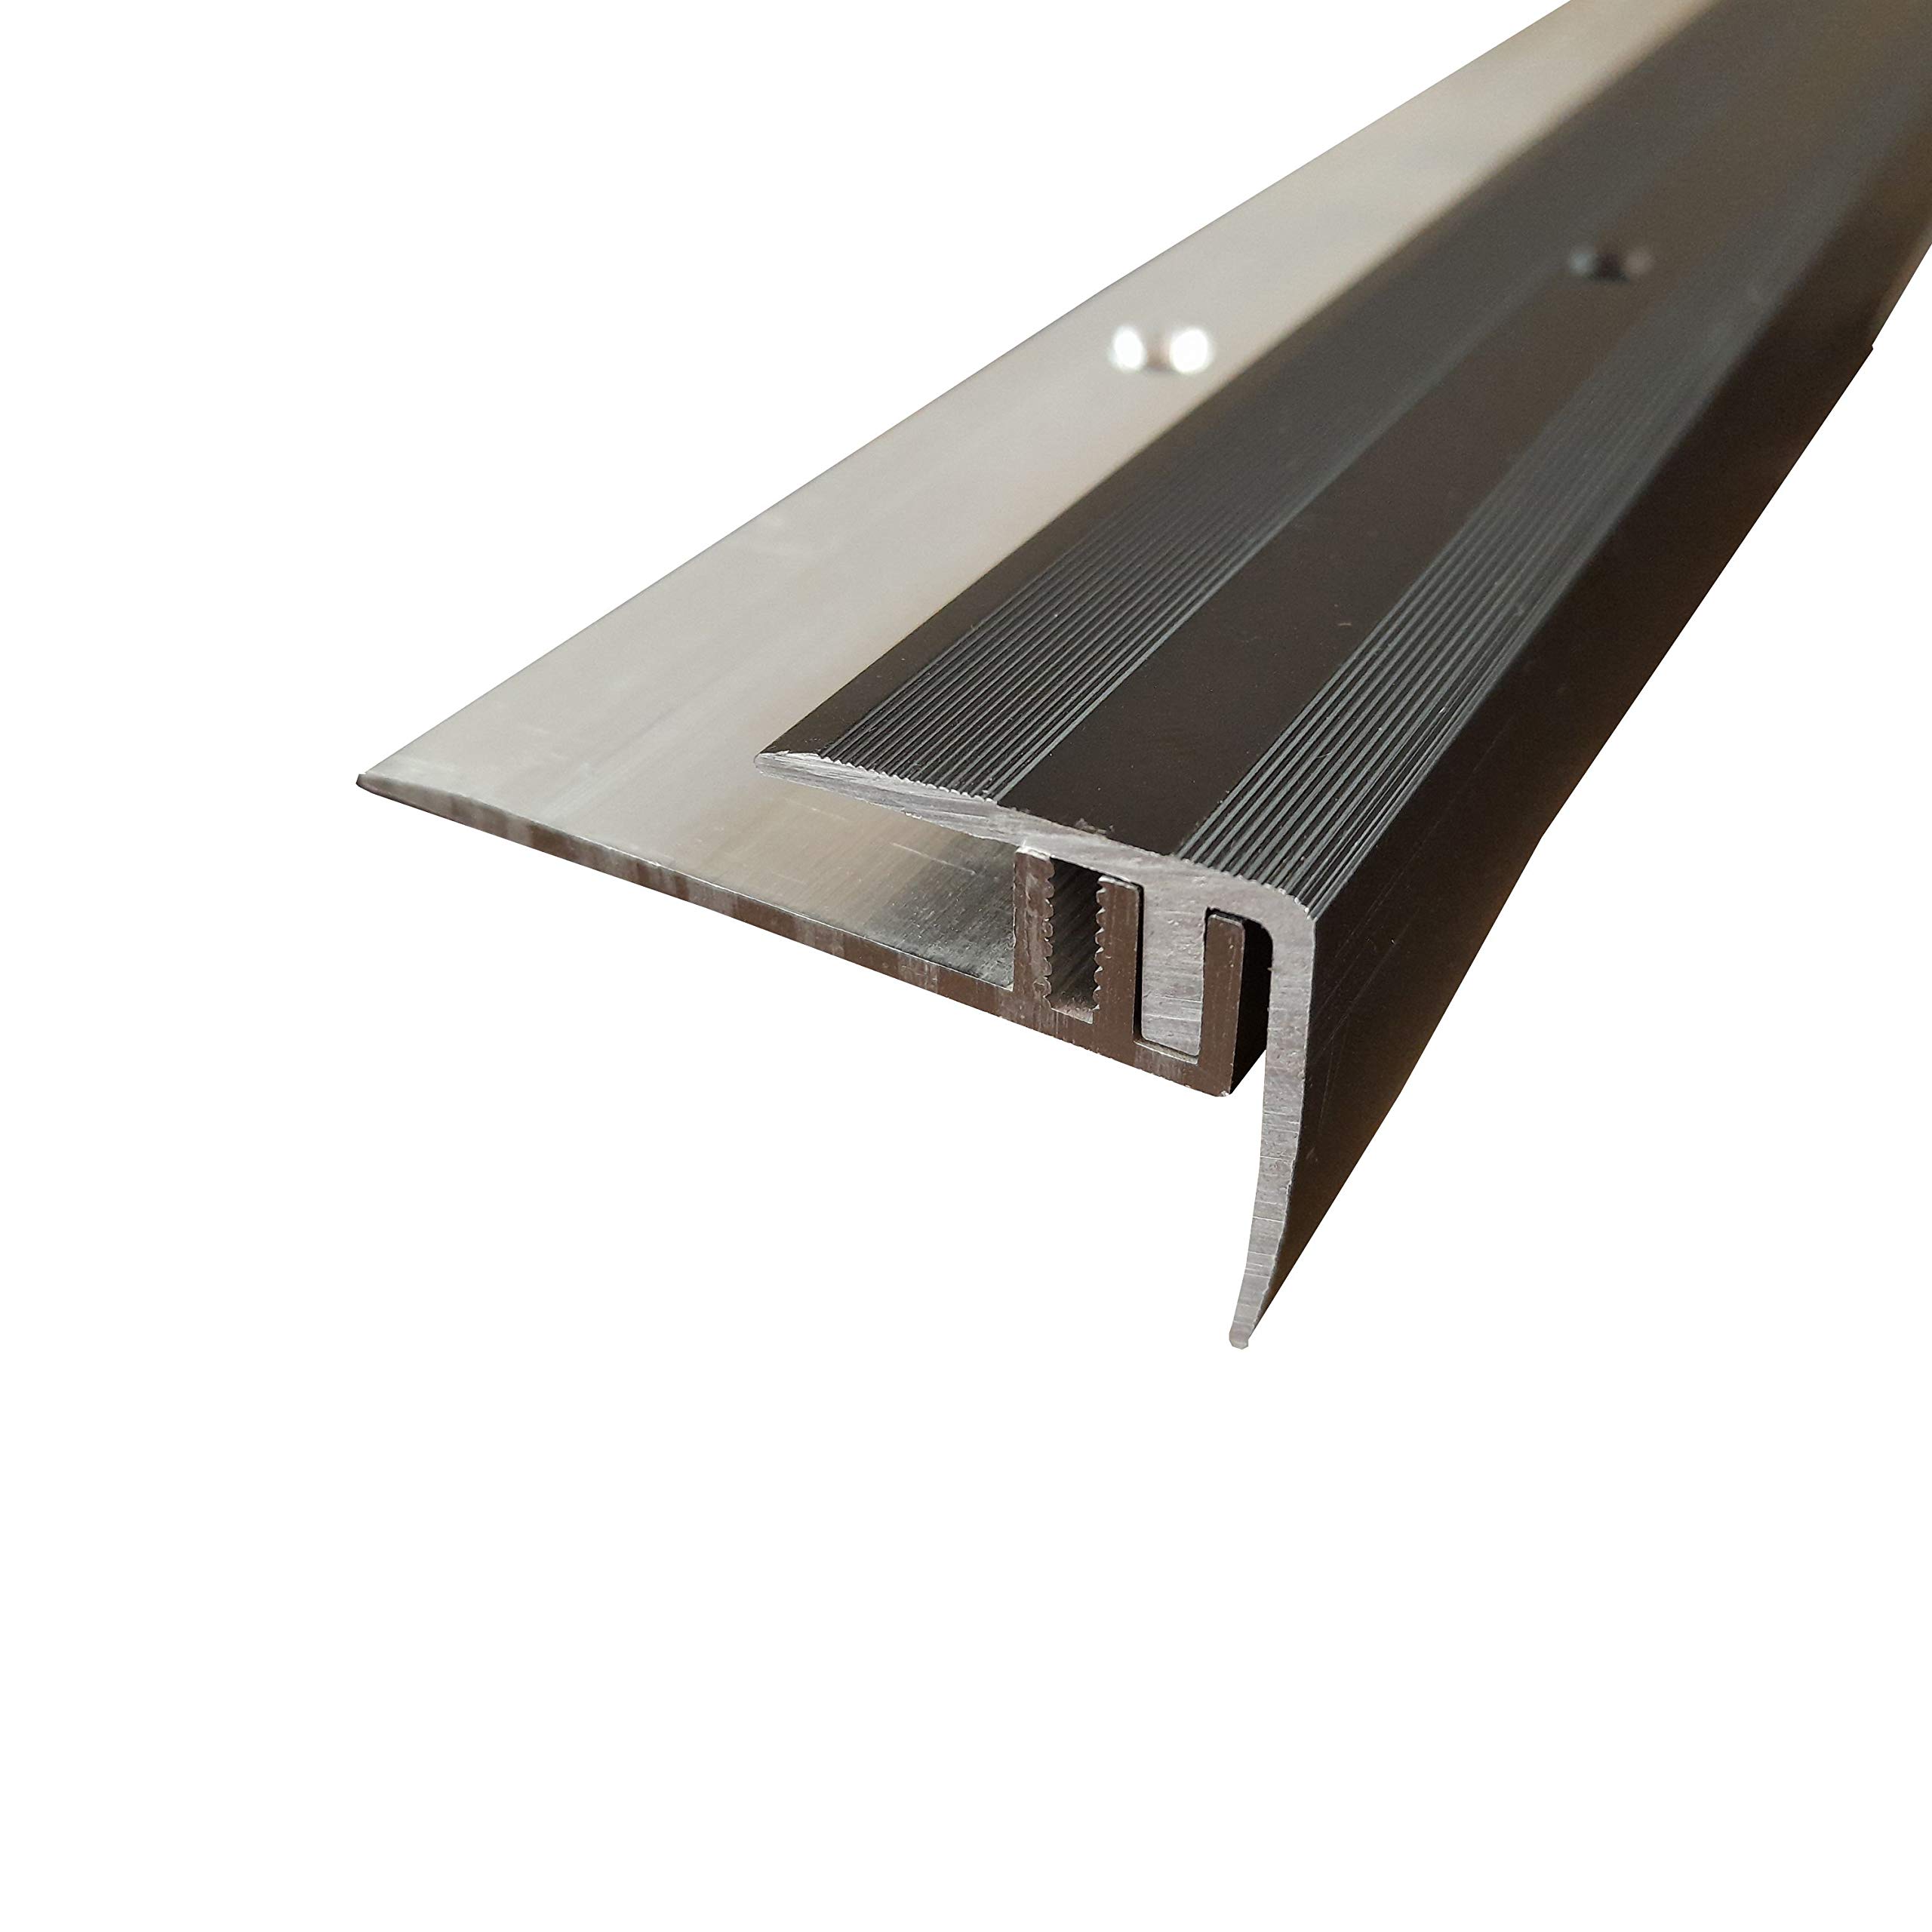 ufitec Profilsystem für Parkett- und Laminatböden - für Belagshöhen von 7-15 mm - viele Farben lieferbar (Treppenkantenprofil, Bronze Dunkel, 190 cm länge)